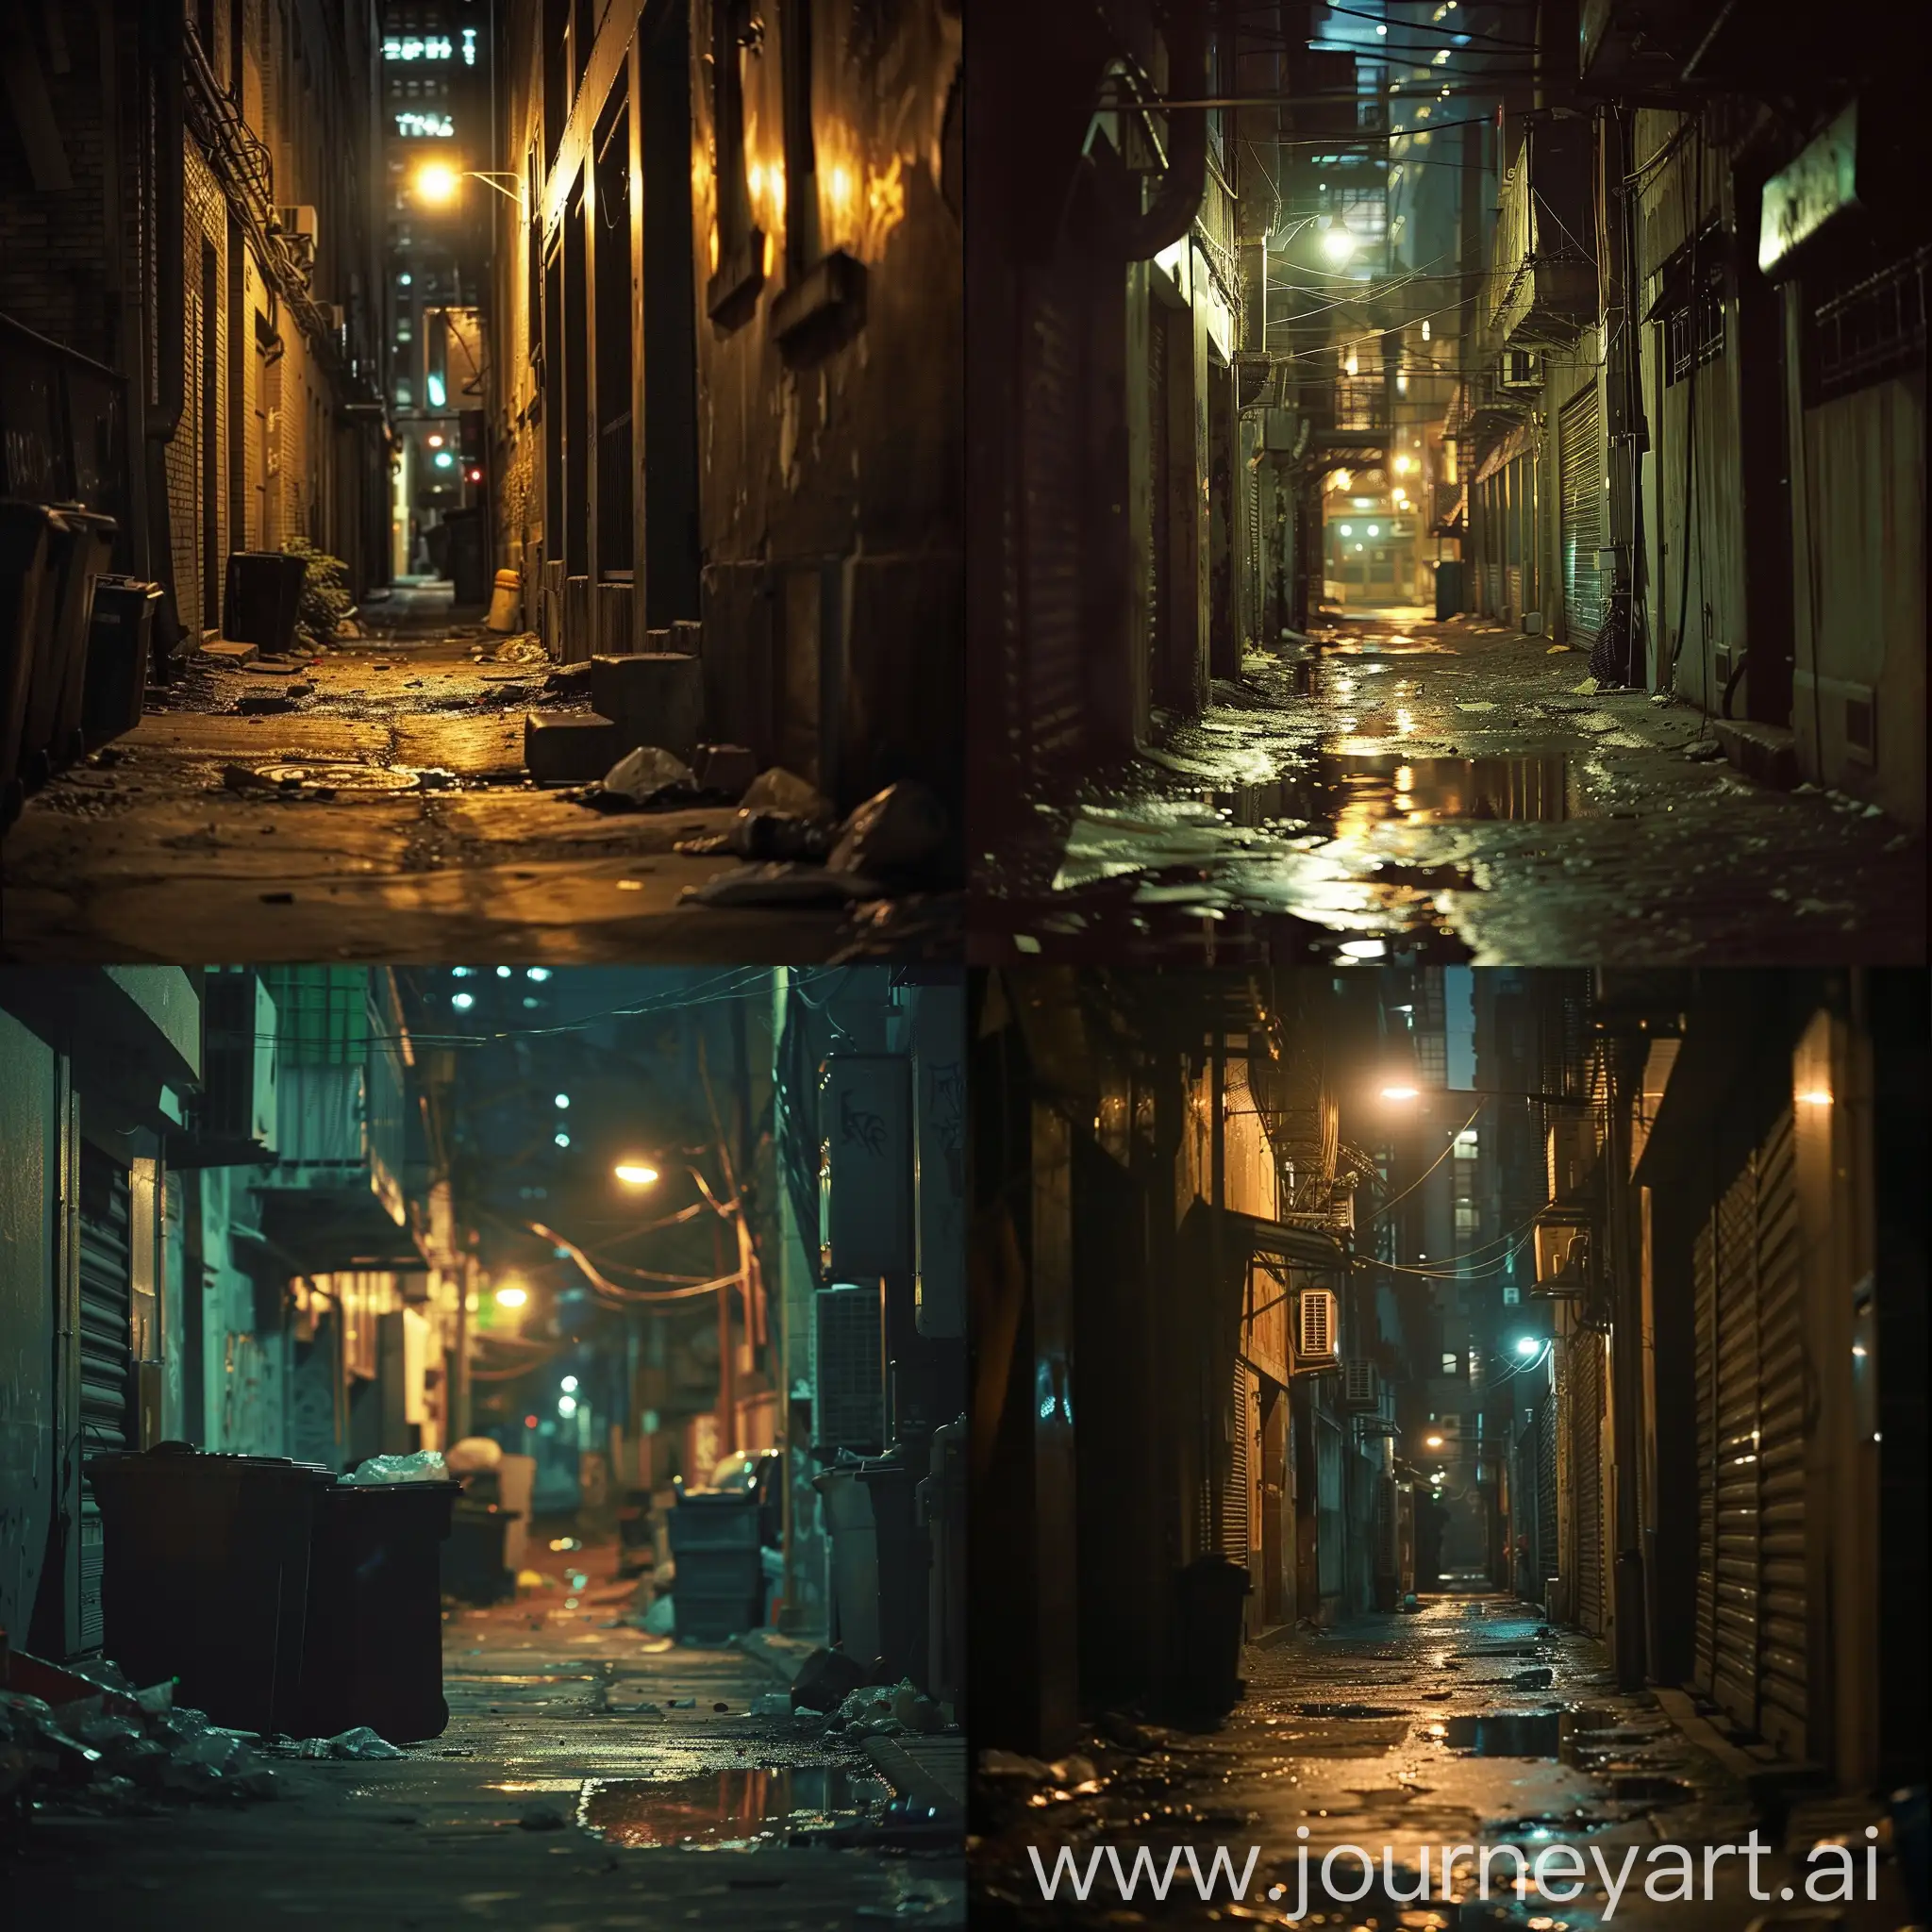 Urban-Night-Scene-Streetlights-Illuminate-a-Gritty-Alley